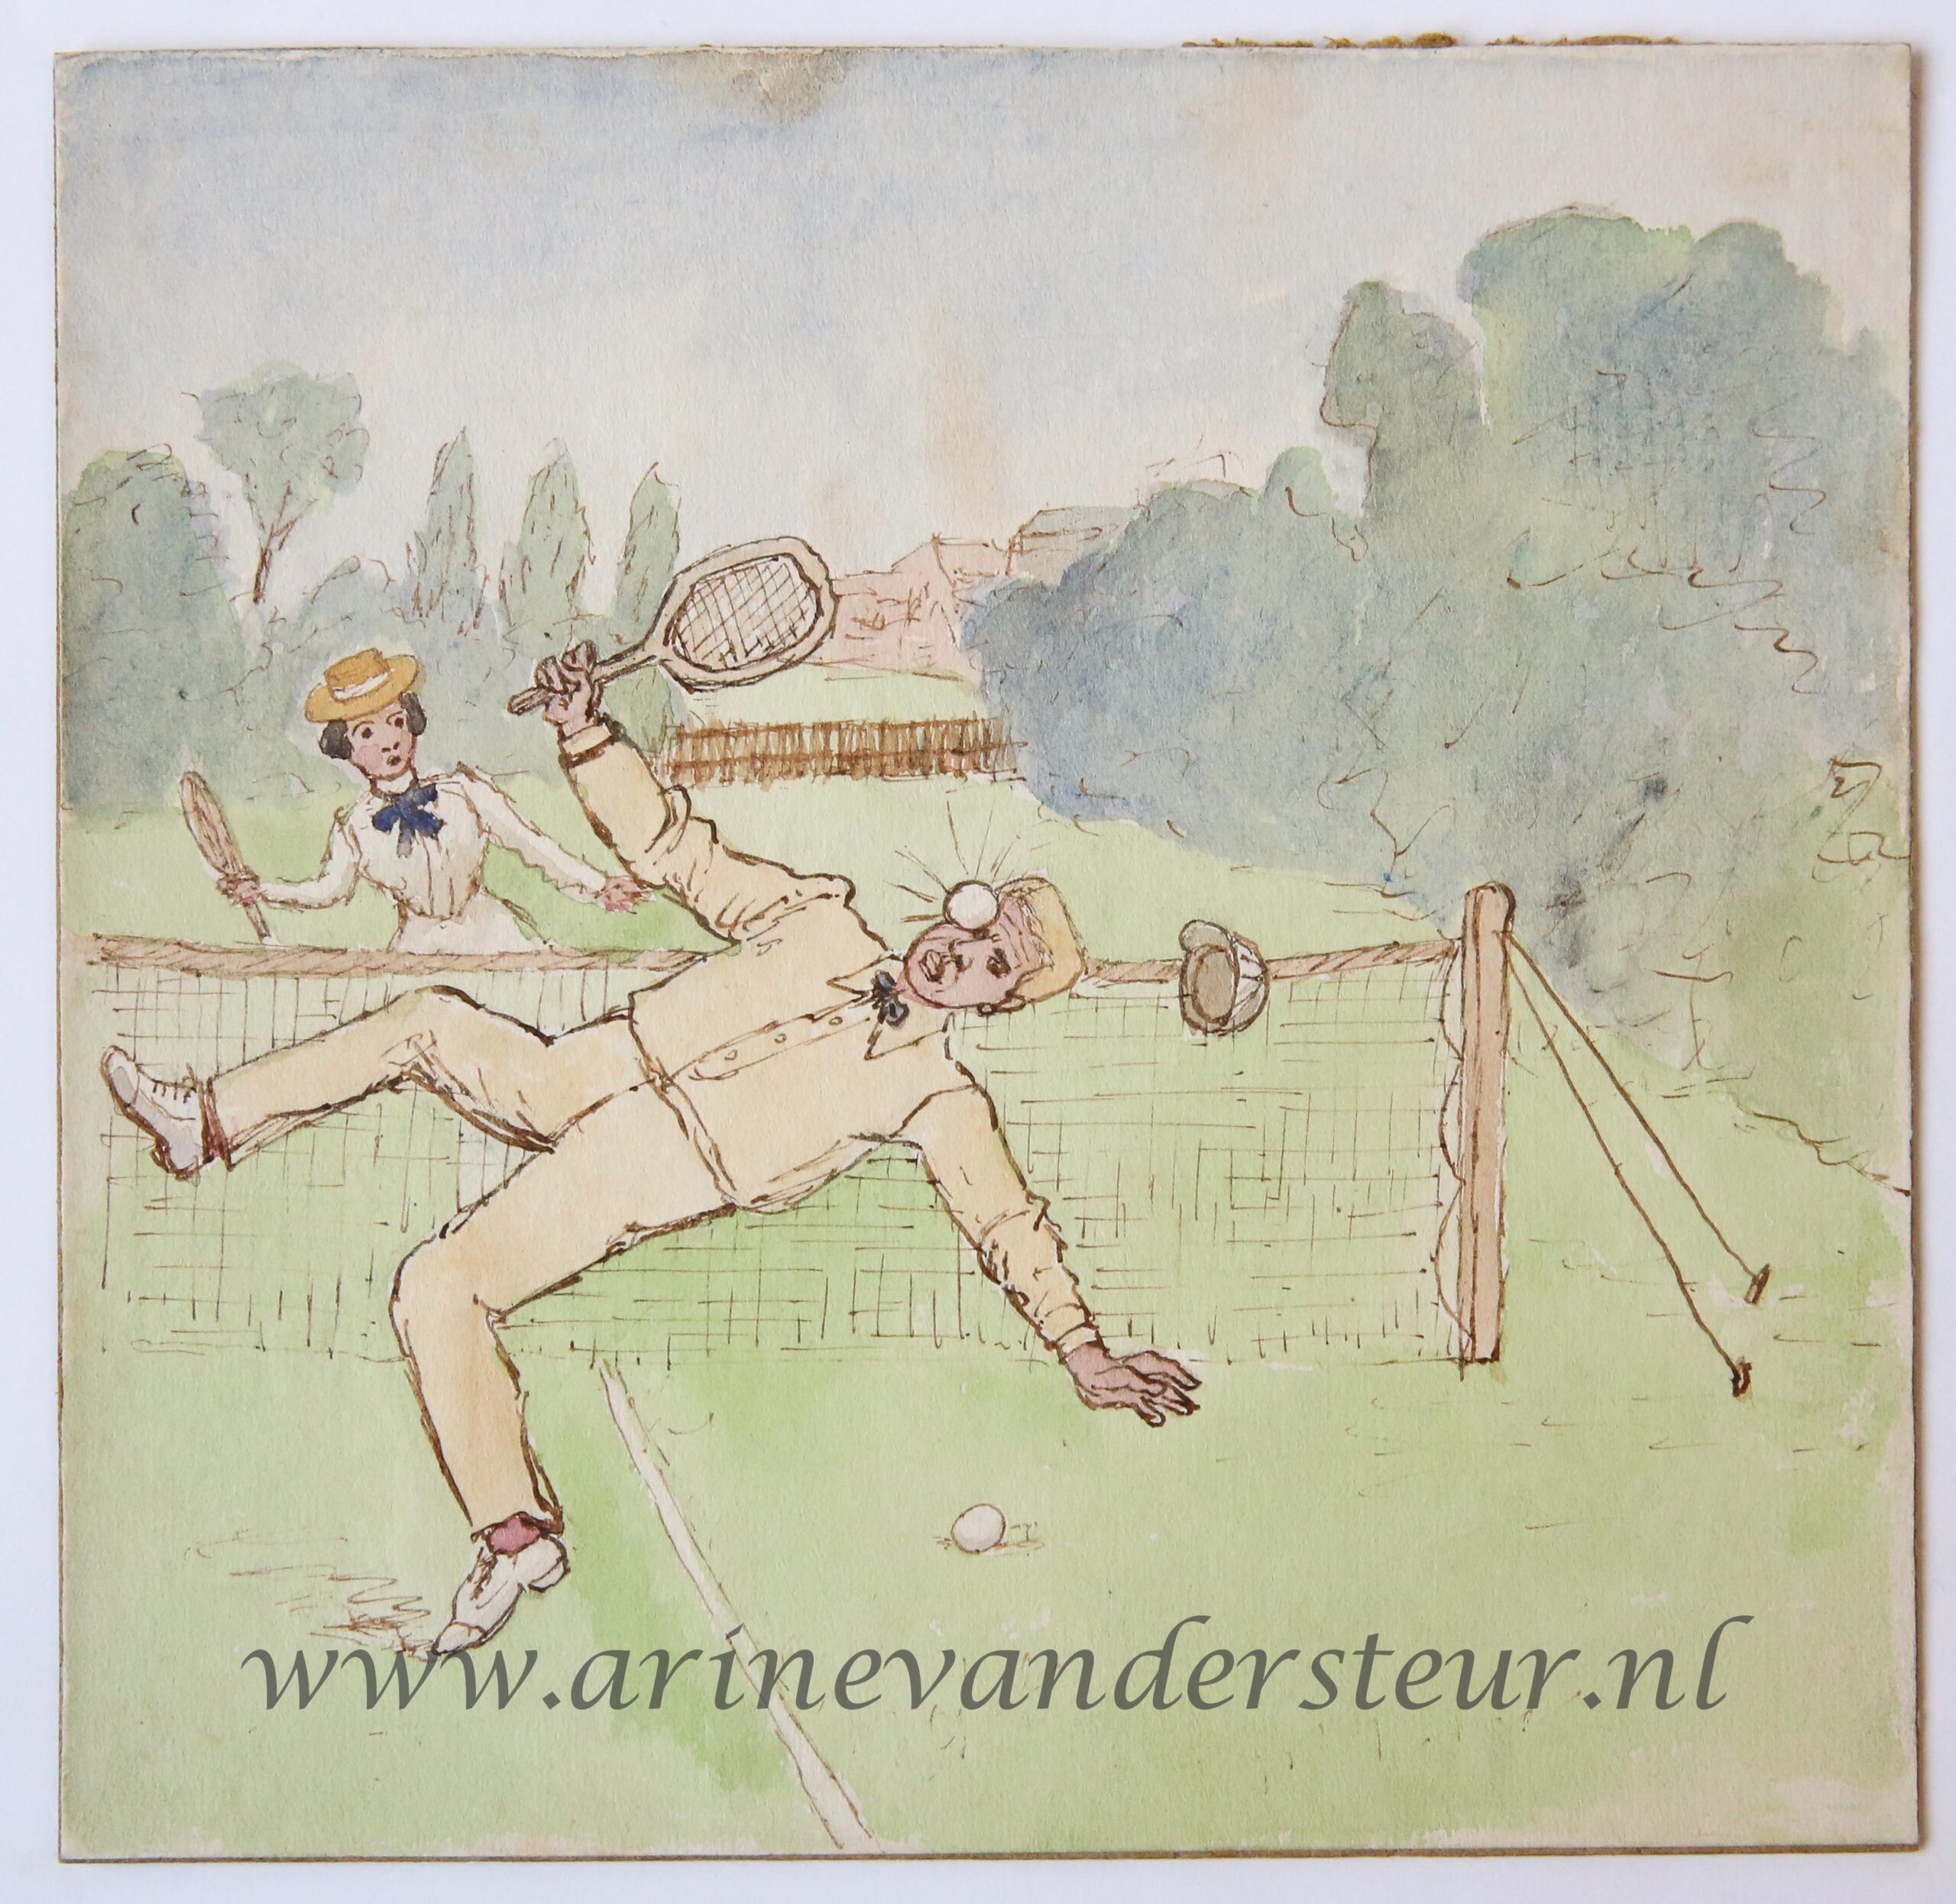 [Original drawing] Tennis (accident), ongeluk bij tennisspel, ca -1950.